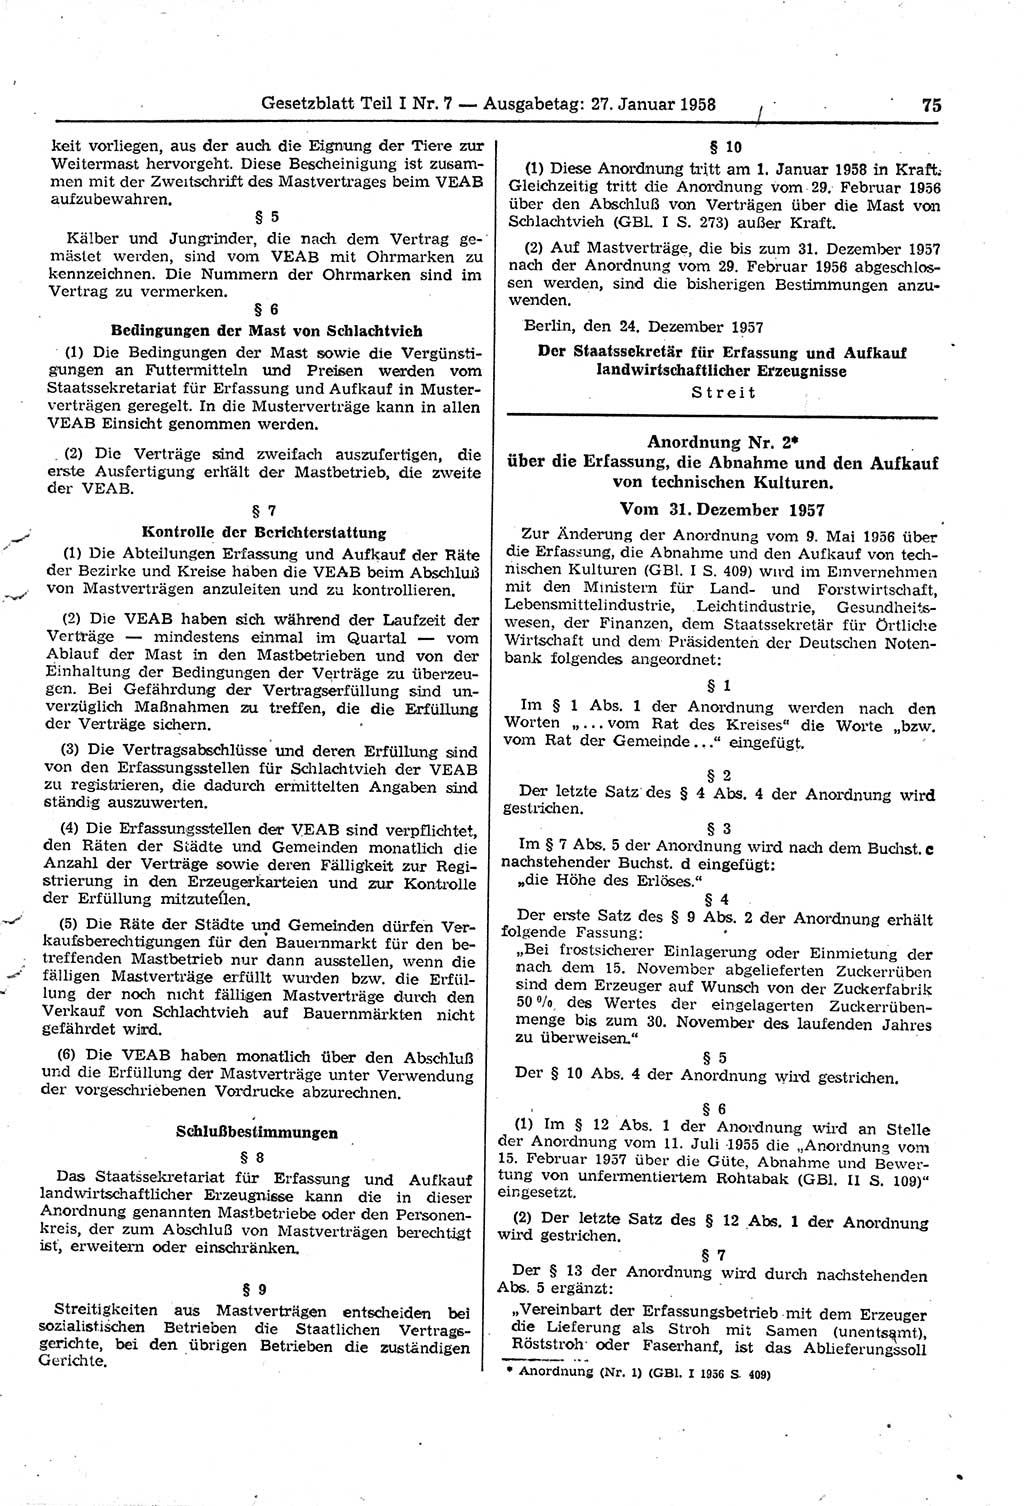 Gesetzblatt (GBl.) der Deutschen Demokratischen Republik (DDR) Teil Ⅰ 1958, Seite 75 (GBl. DDR Ⅰ 1958, S. 75)